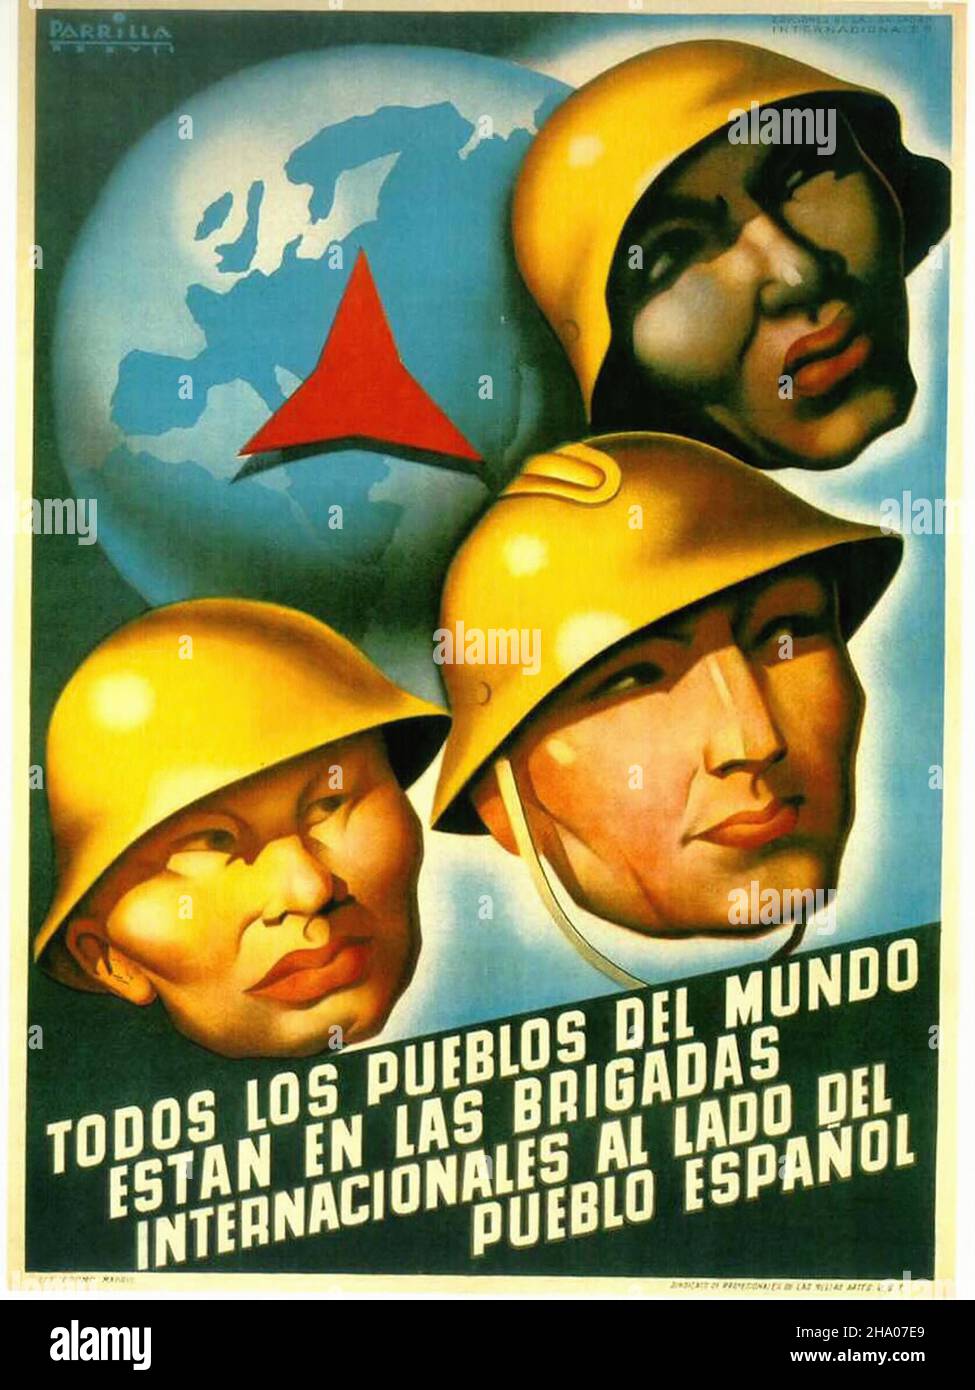 Todos Los Pueblos Del Mundo - Poster de propagande sur la guerre civile espagnole (Guerra civil Española) Banque D'Images